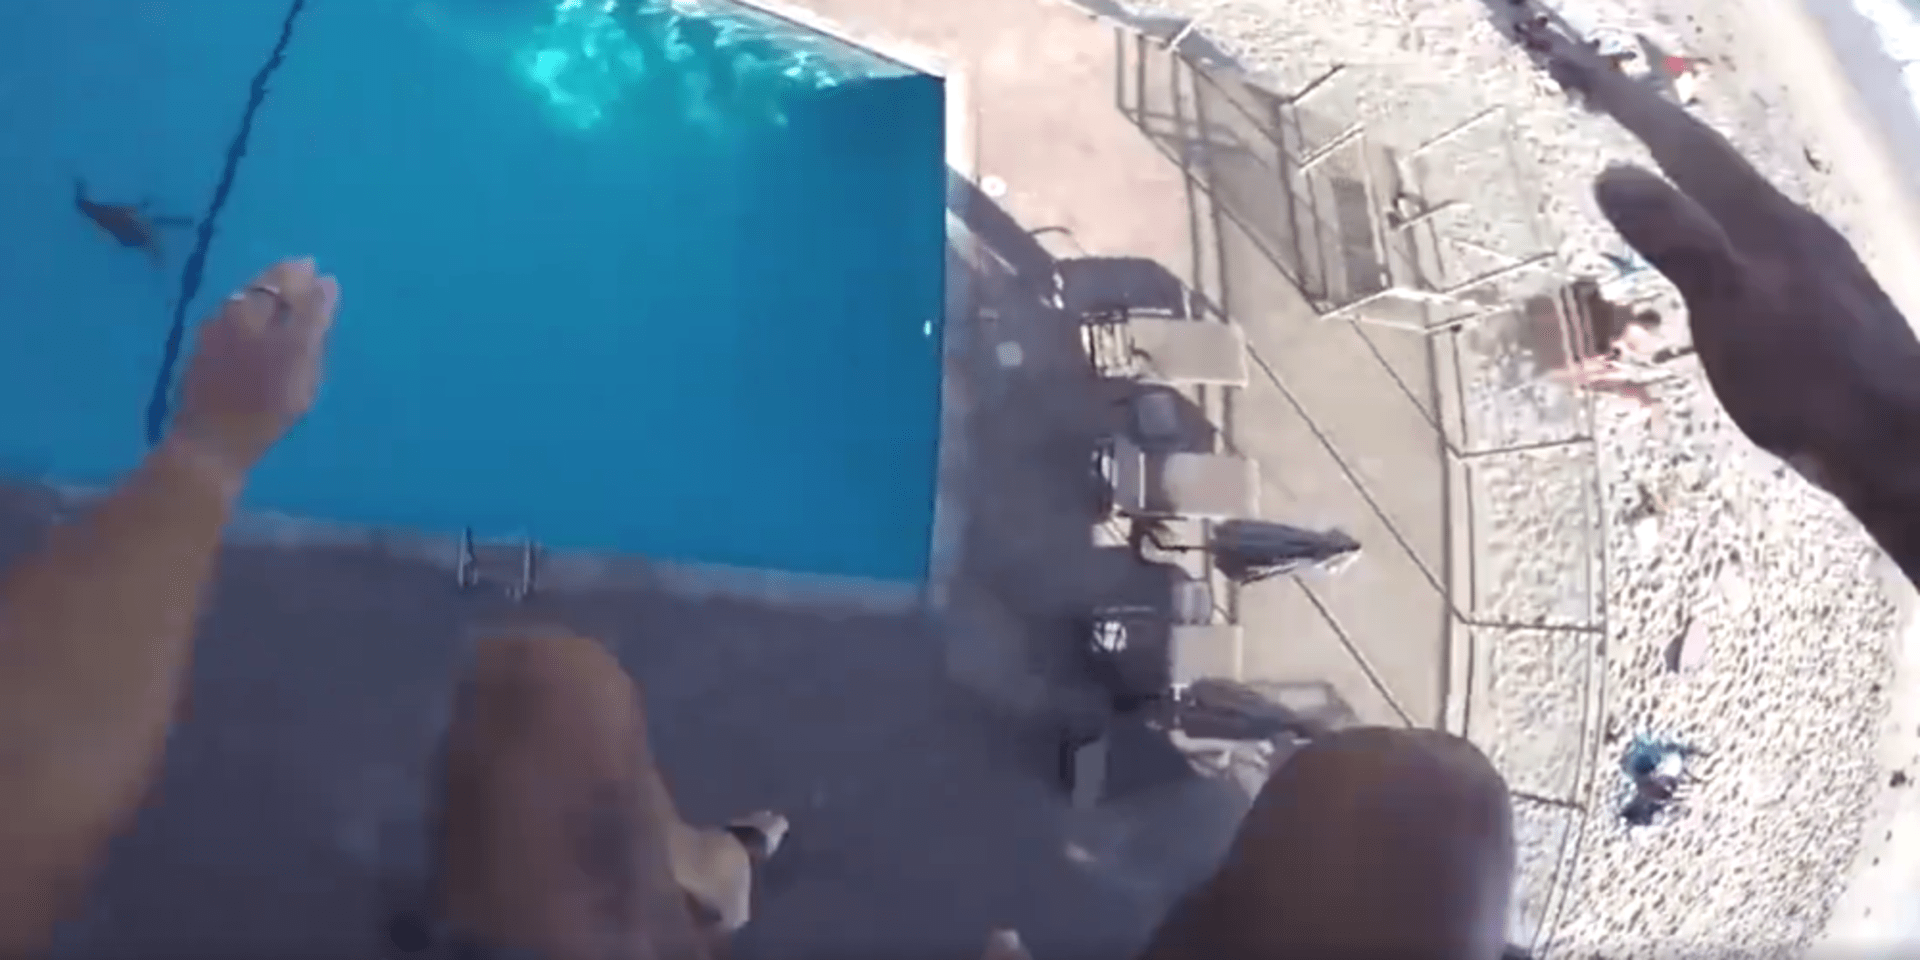 pool jump